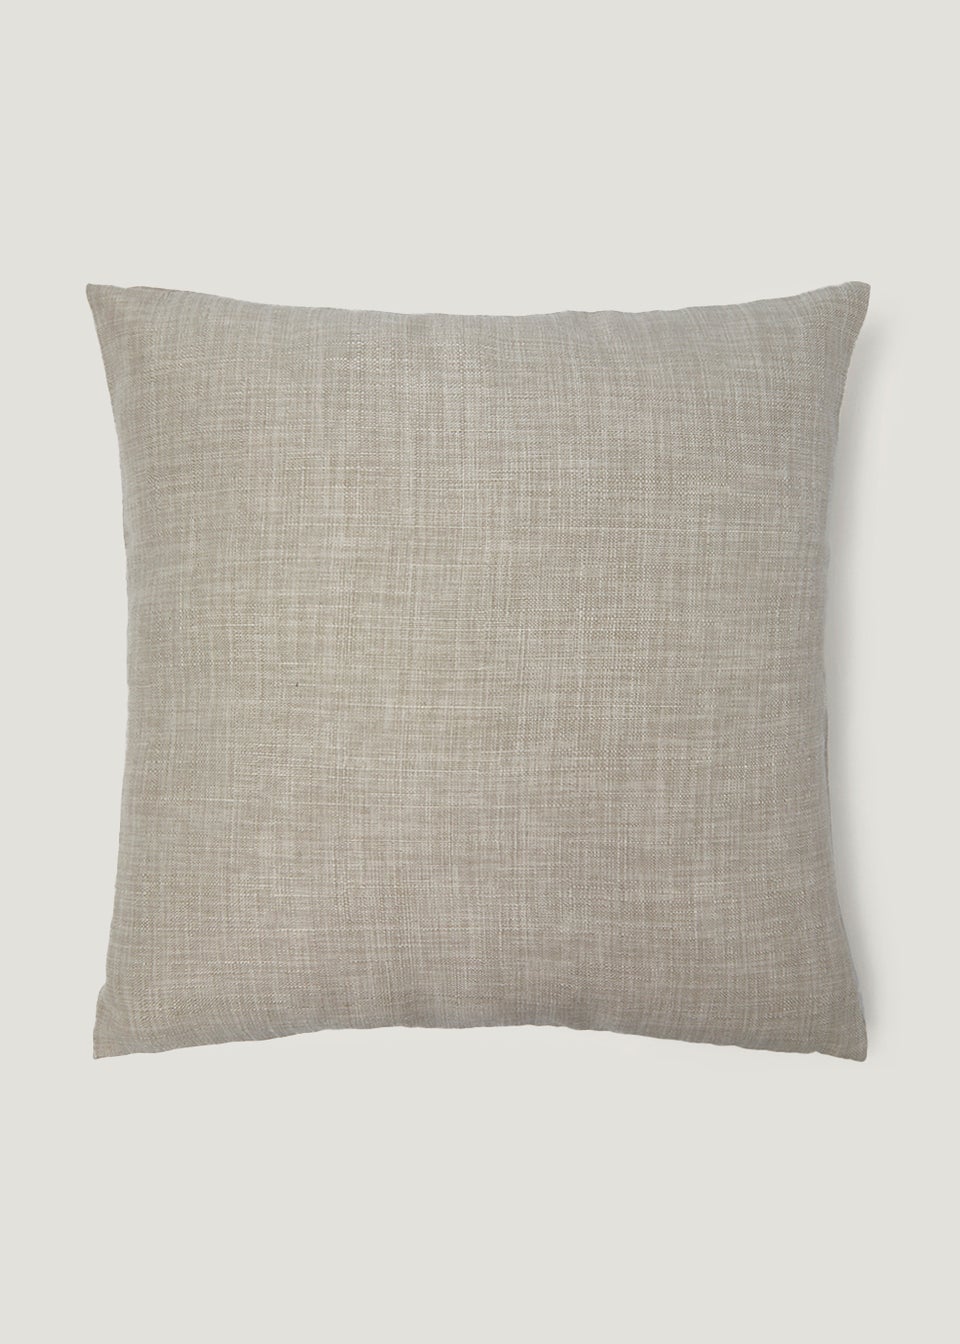 Neutral Linen-Look Cushion (43cm x 43cm)